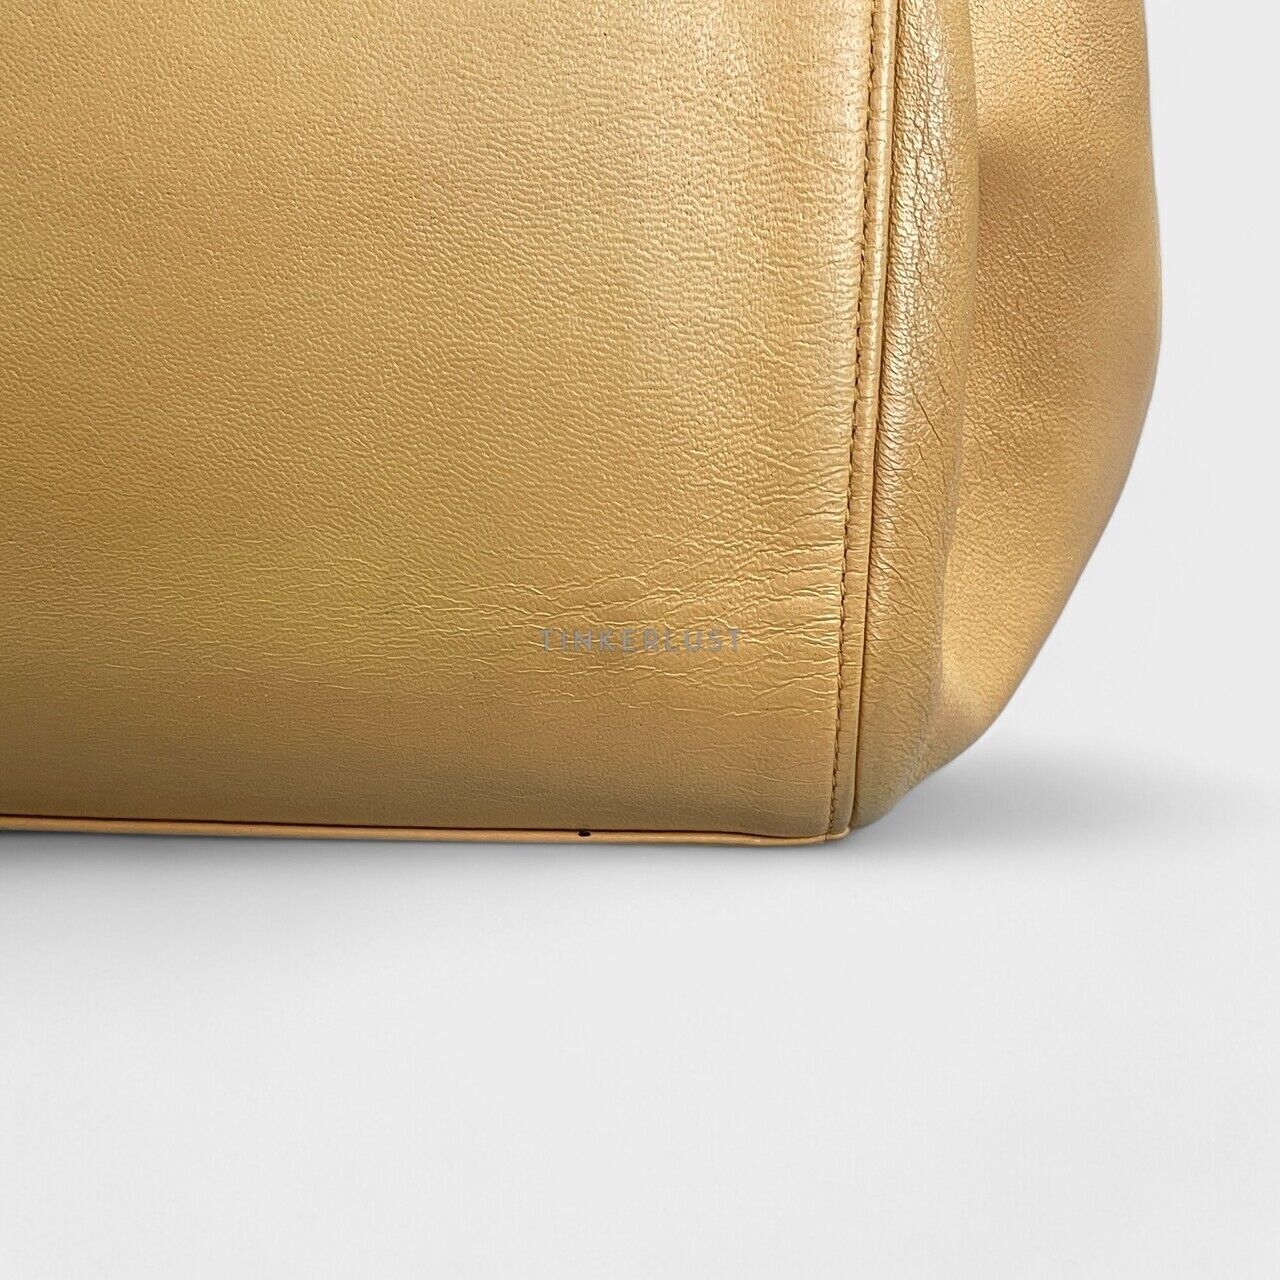 Chanel Brown Chocolate Bar Flap Bag #6 Shoulder Bag